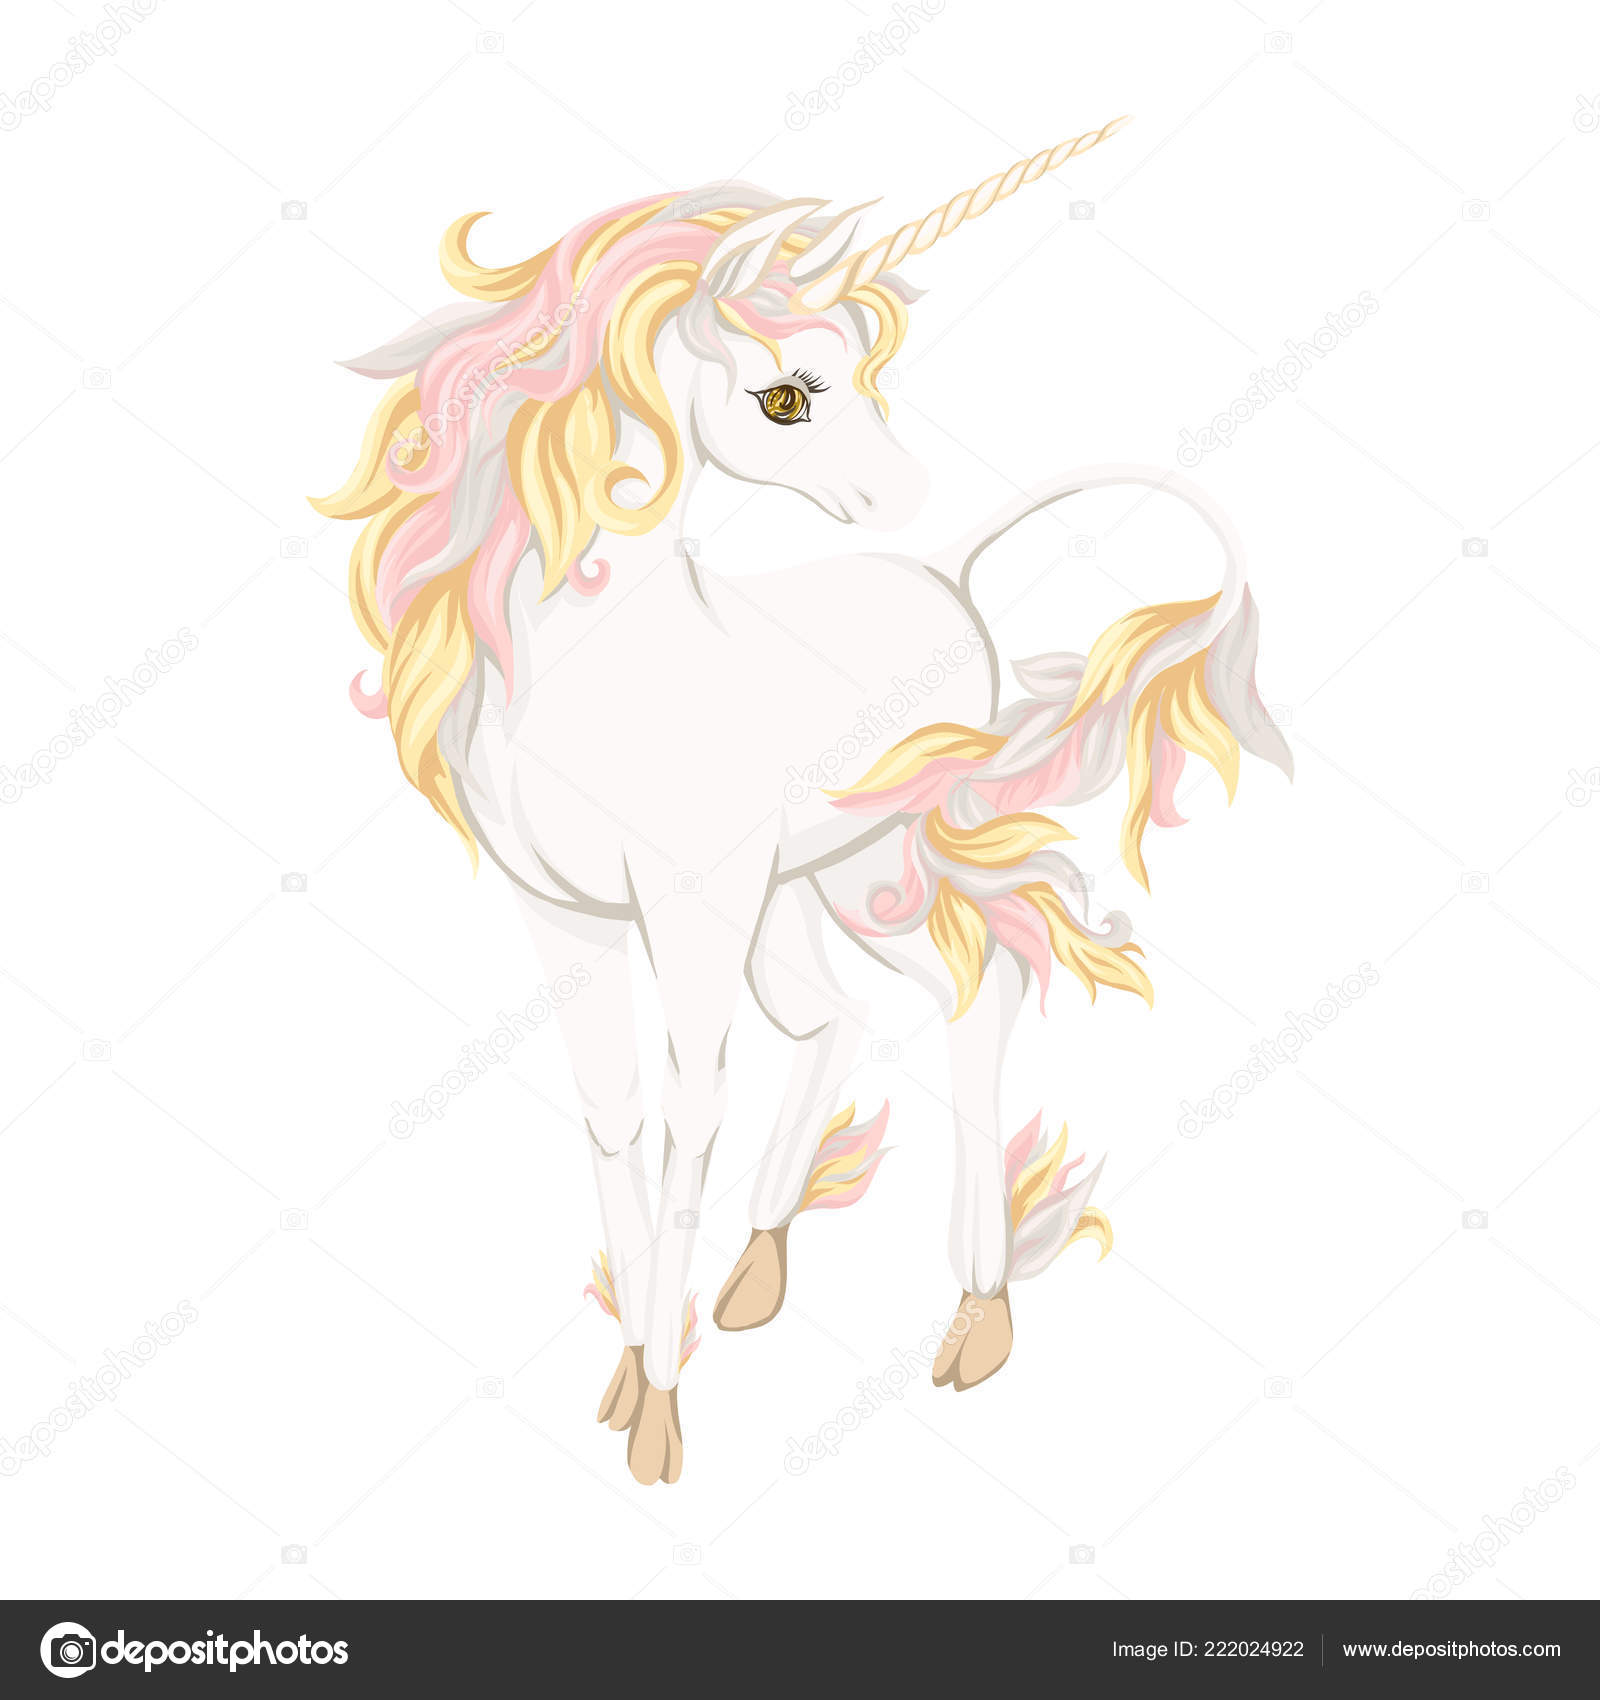 Unicorn - Xem hình một con kỳ lân tuyệt đẹp với sức mạnh kỳ diệu và sắc lạnh trên đôi cánh của nó. Con vật đáng yêu này sẽ khiến bạn ngạc nhiên với màu sắc lấp lánh và sự tinh tế trong từng chi tiết. Hãy xem chi tiết thú vị về một thế giới phép thuật tuyệt vời qua hình ảnh này.